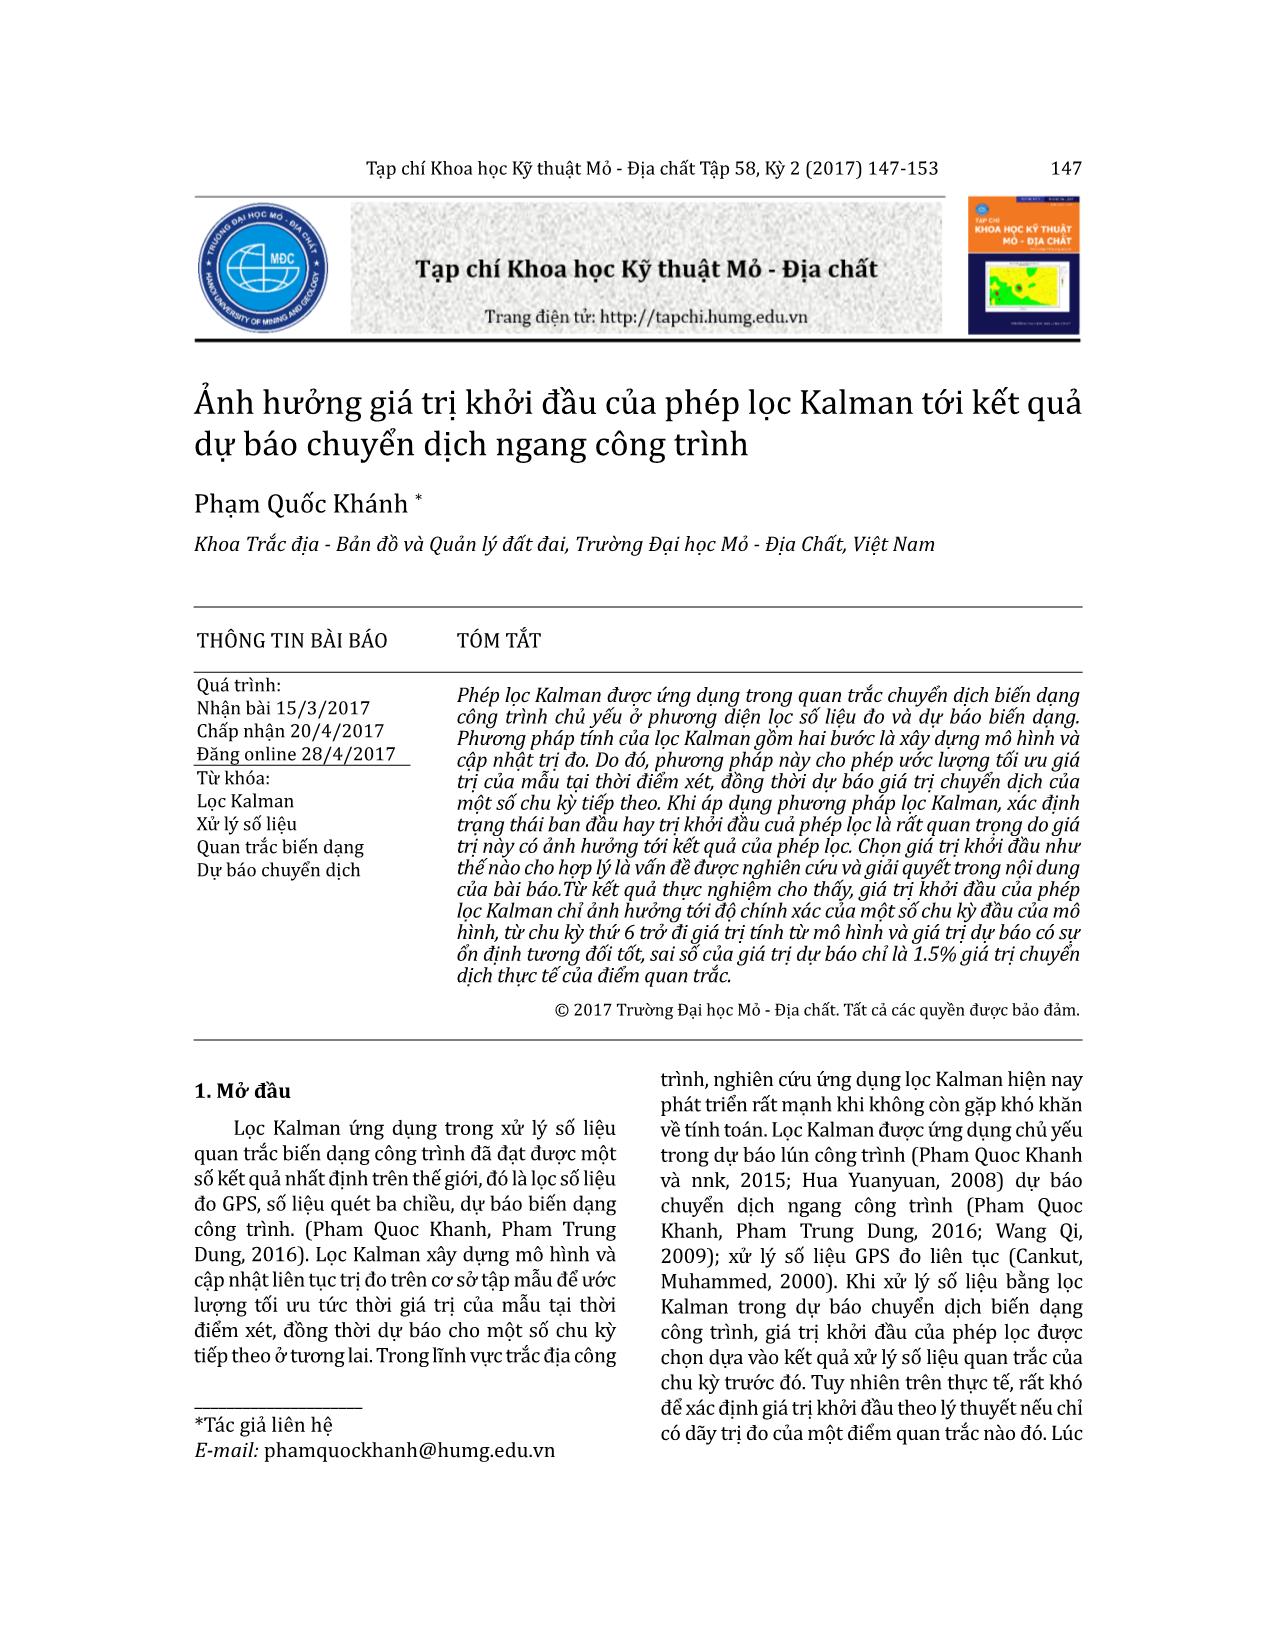 Ảnh hưởng giá trị khởi đầu của phép lọc Kalman tới kết quả dự báo chuyển dịch ngang công trình trang 1